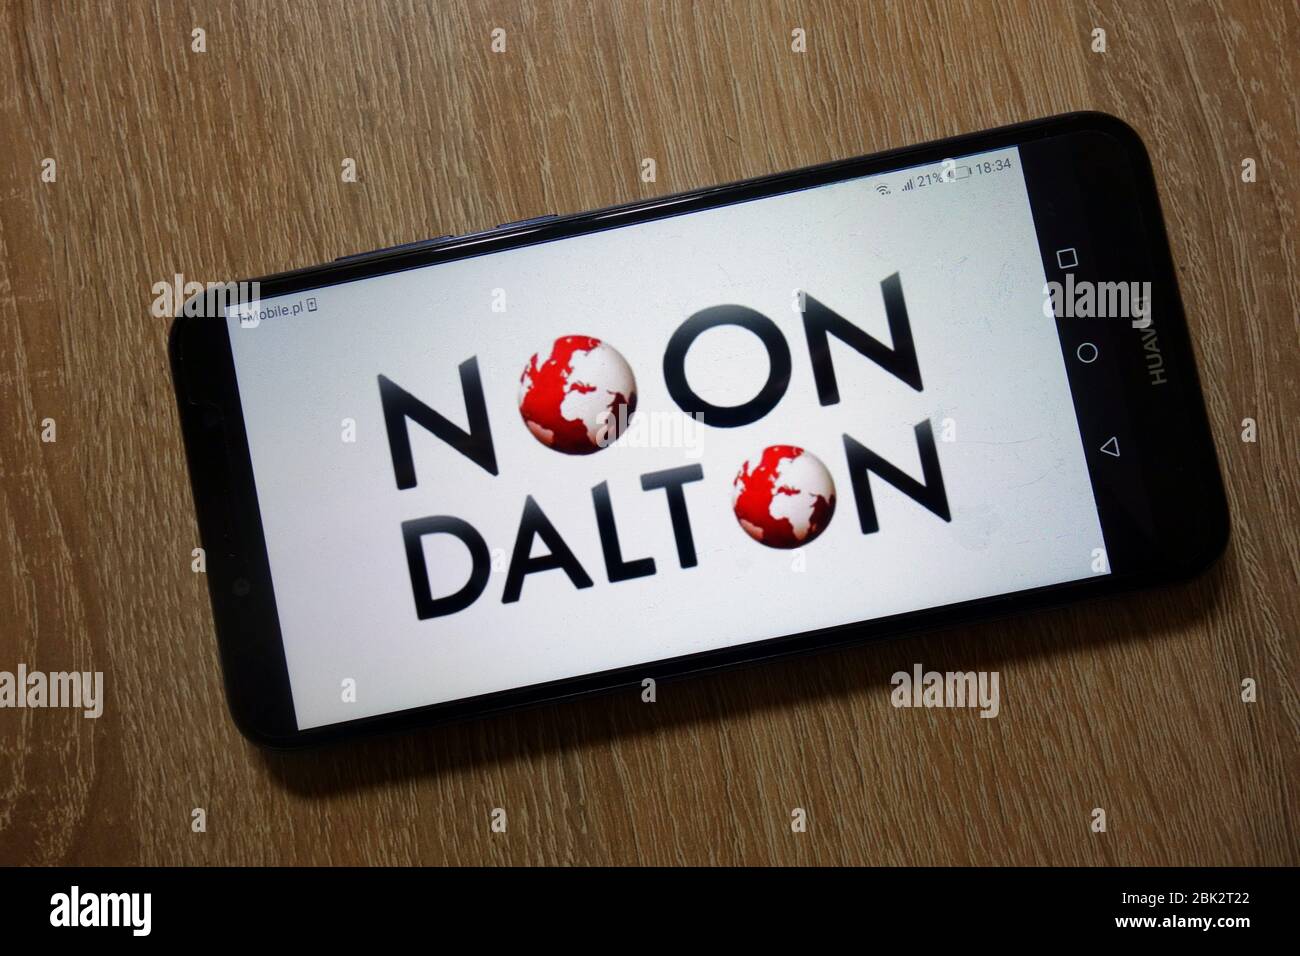 Logo 12:00 Dalton affiché sur le smartphone Banque D'Images